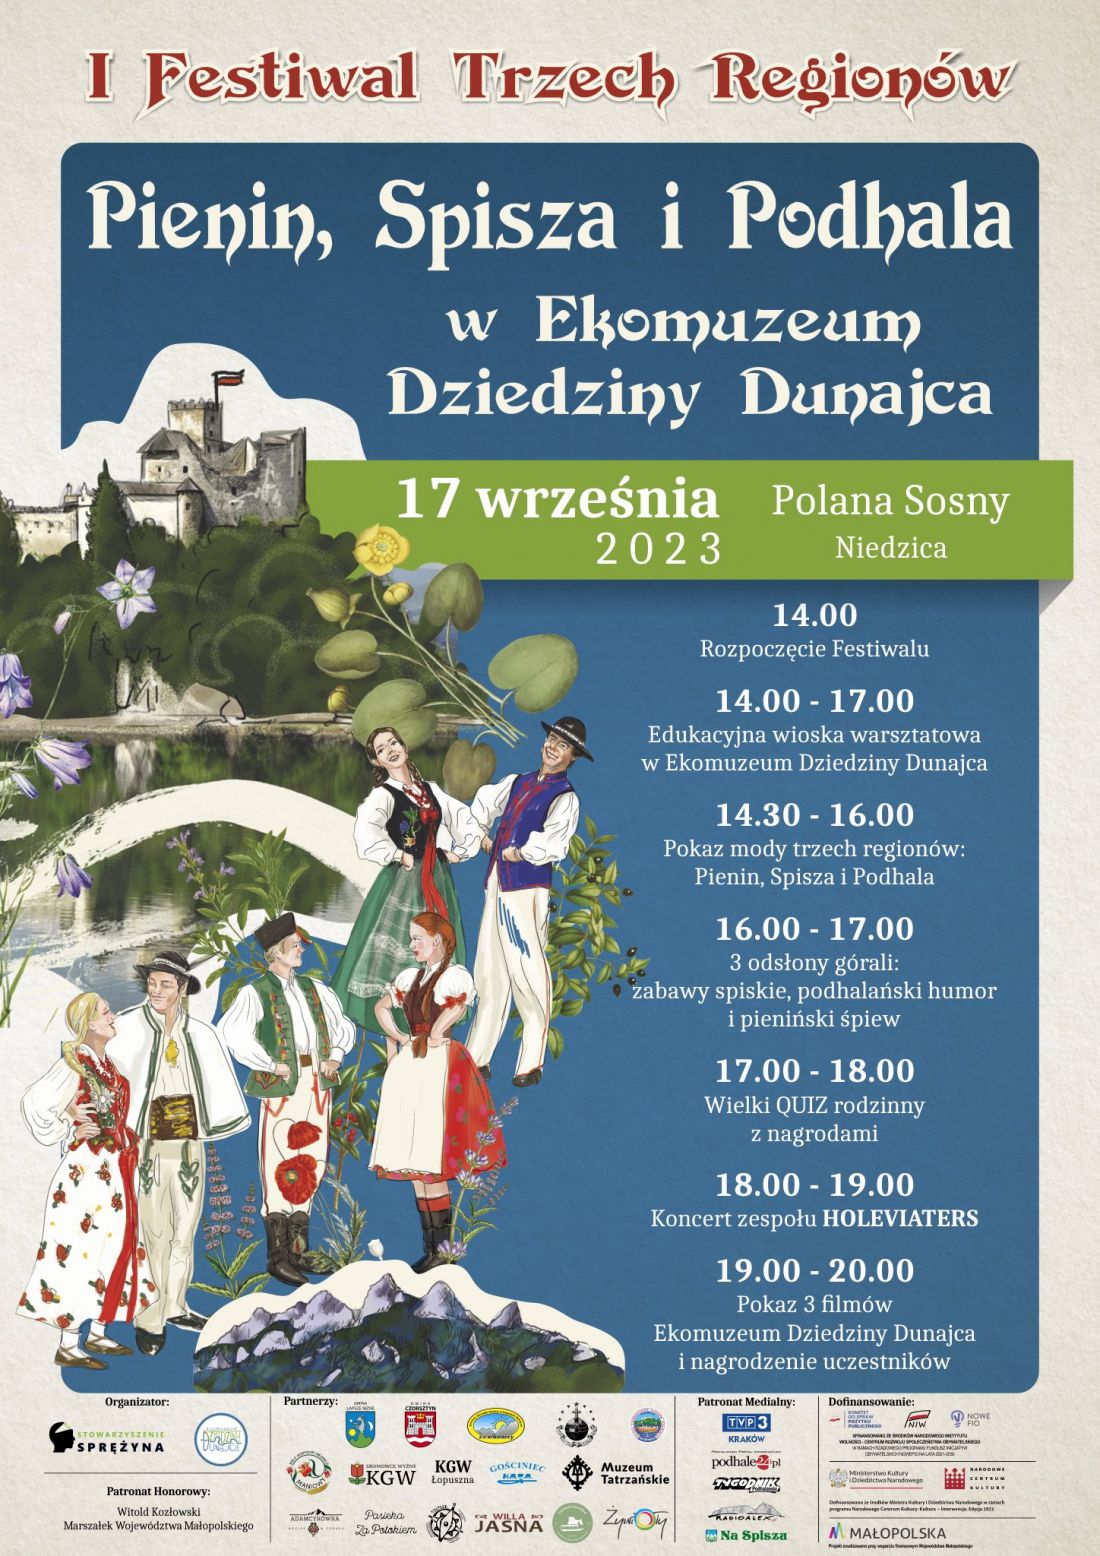 I Festiwal Trzech Regionów: Pienin, Spisza i Podhala w Ekomuzeum Dziedziny Dunajca